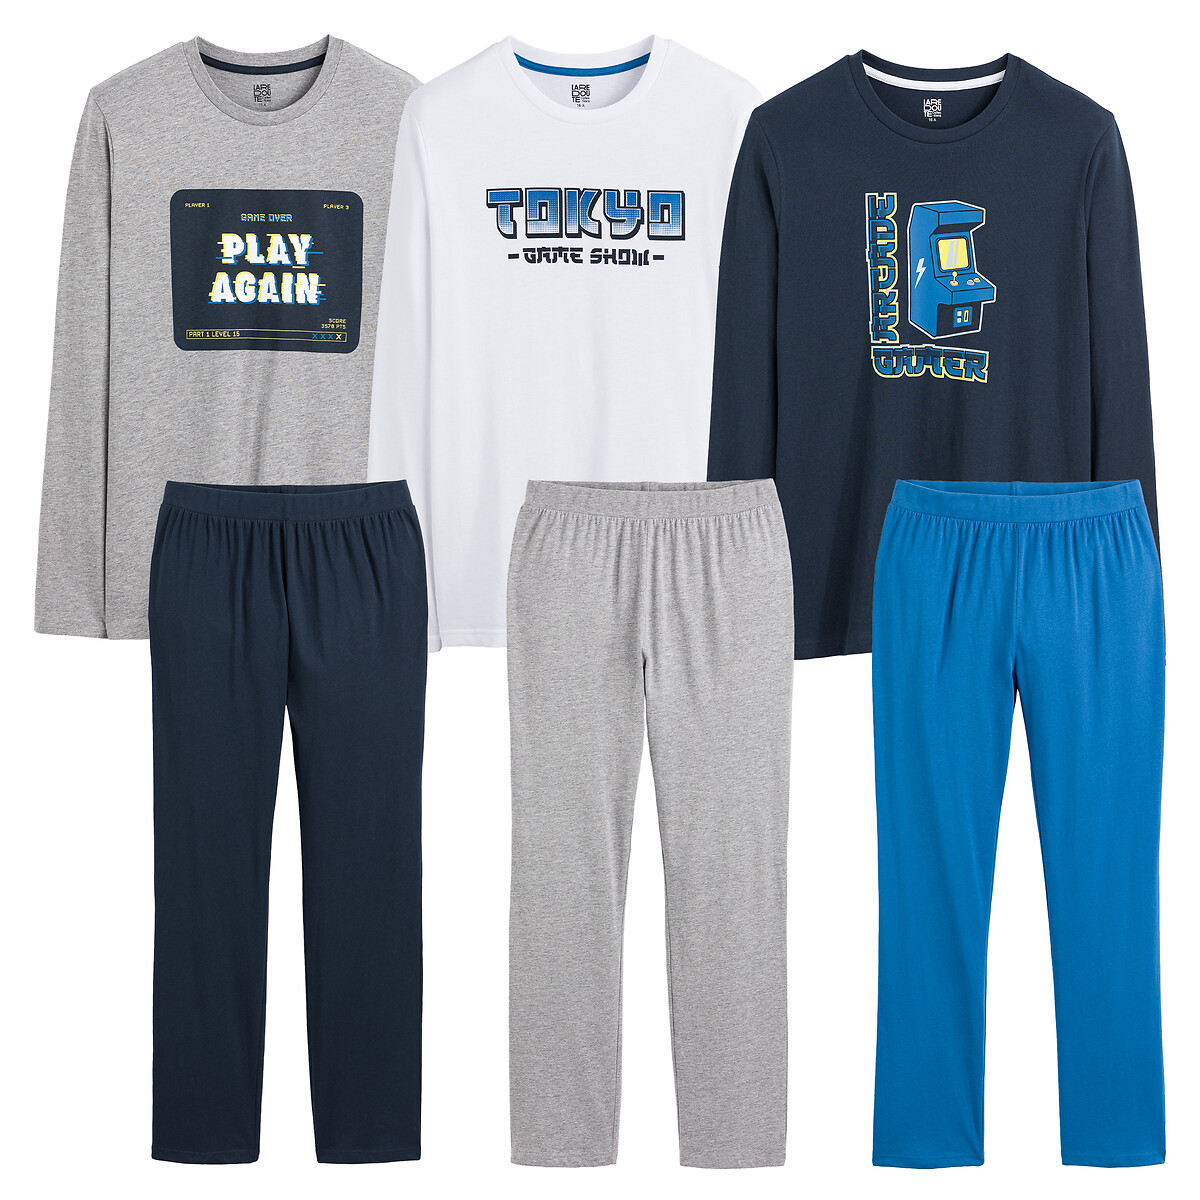 Комплект из трех пижам принт аркадные игры 14 лет - 162 см синий комплект из трех пижам с шортами 3 14 лет 8 лет 126 см синий